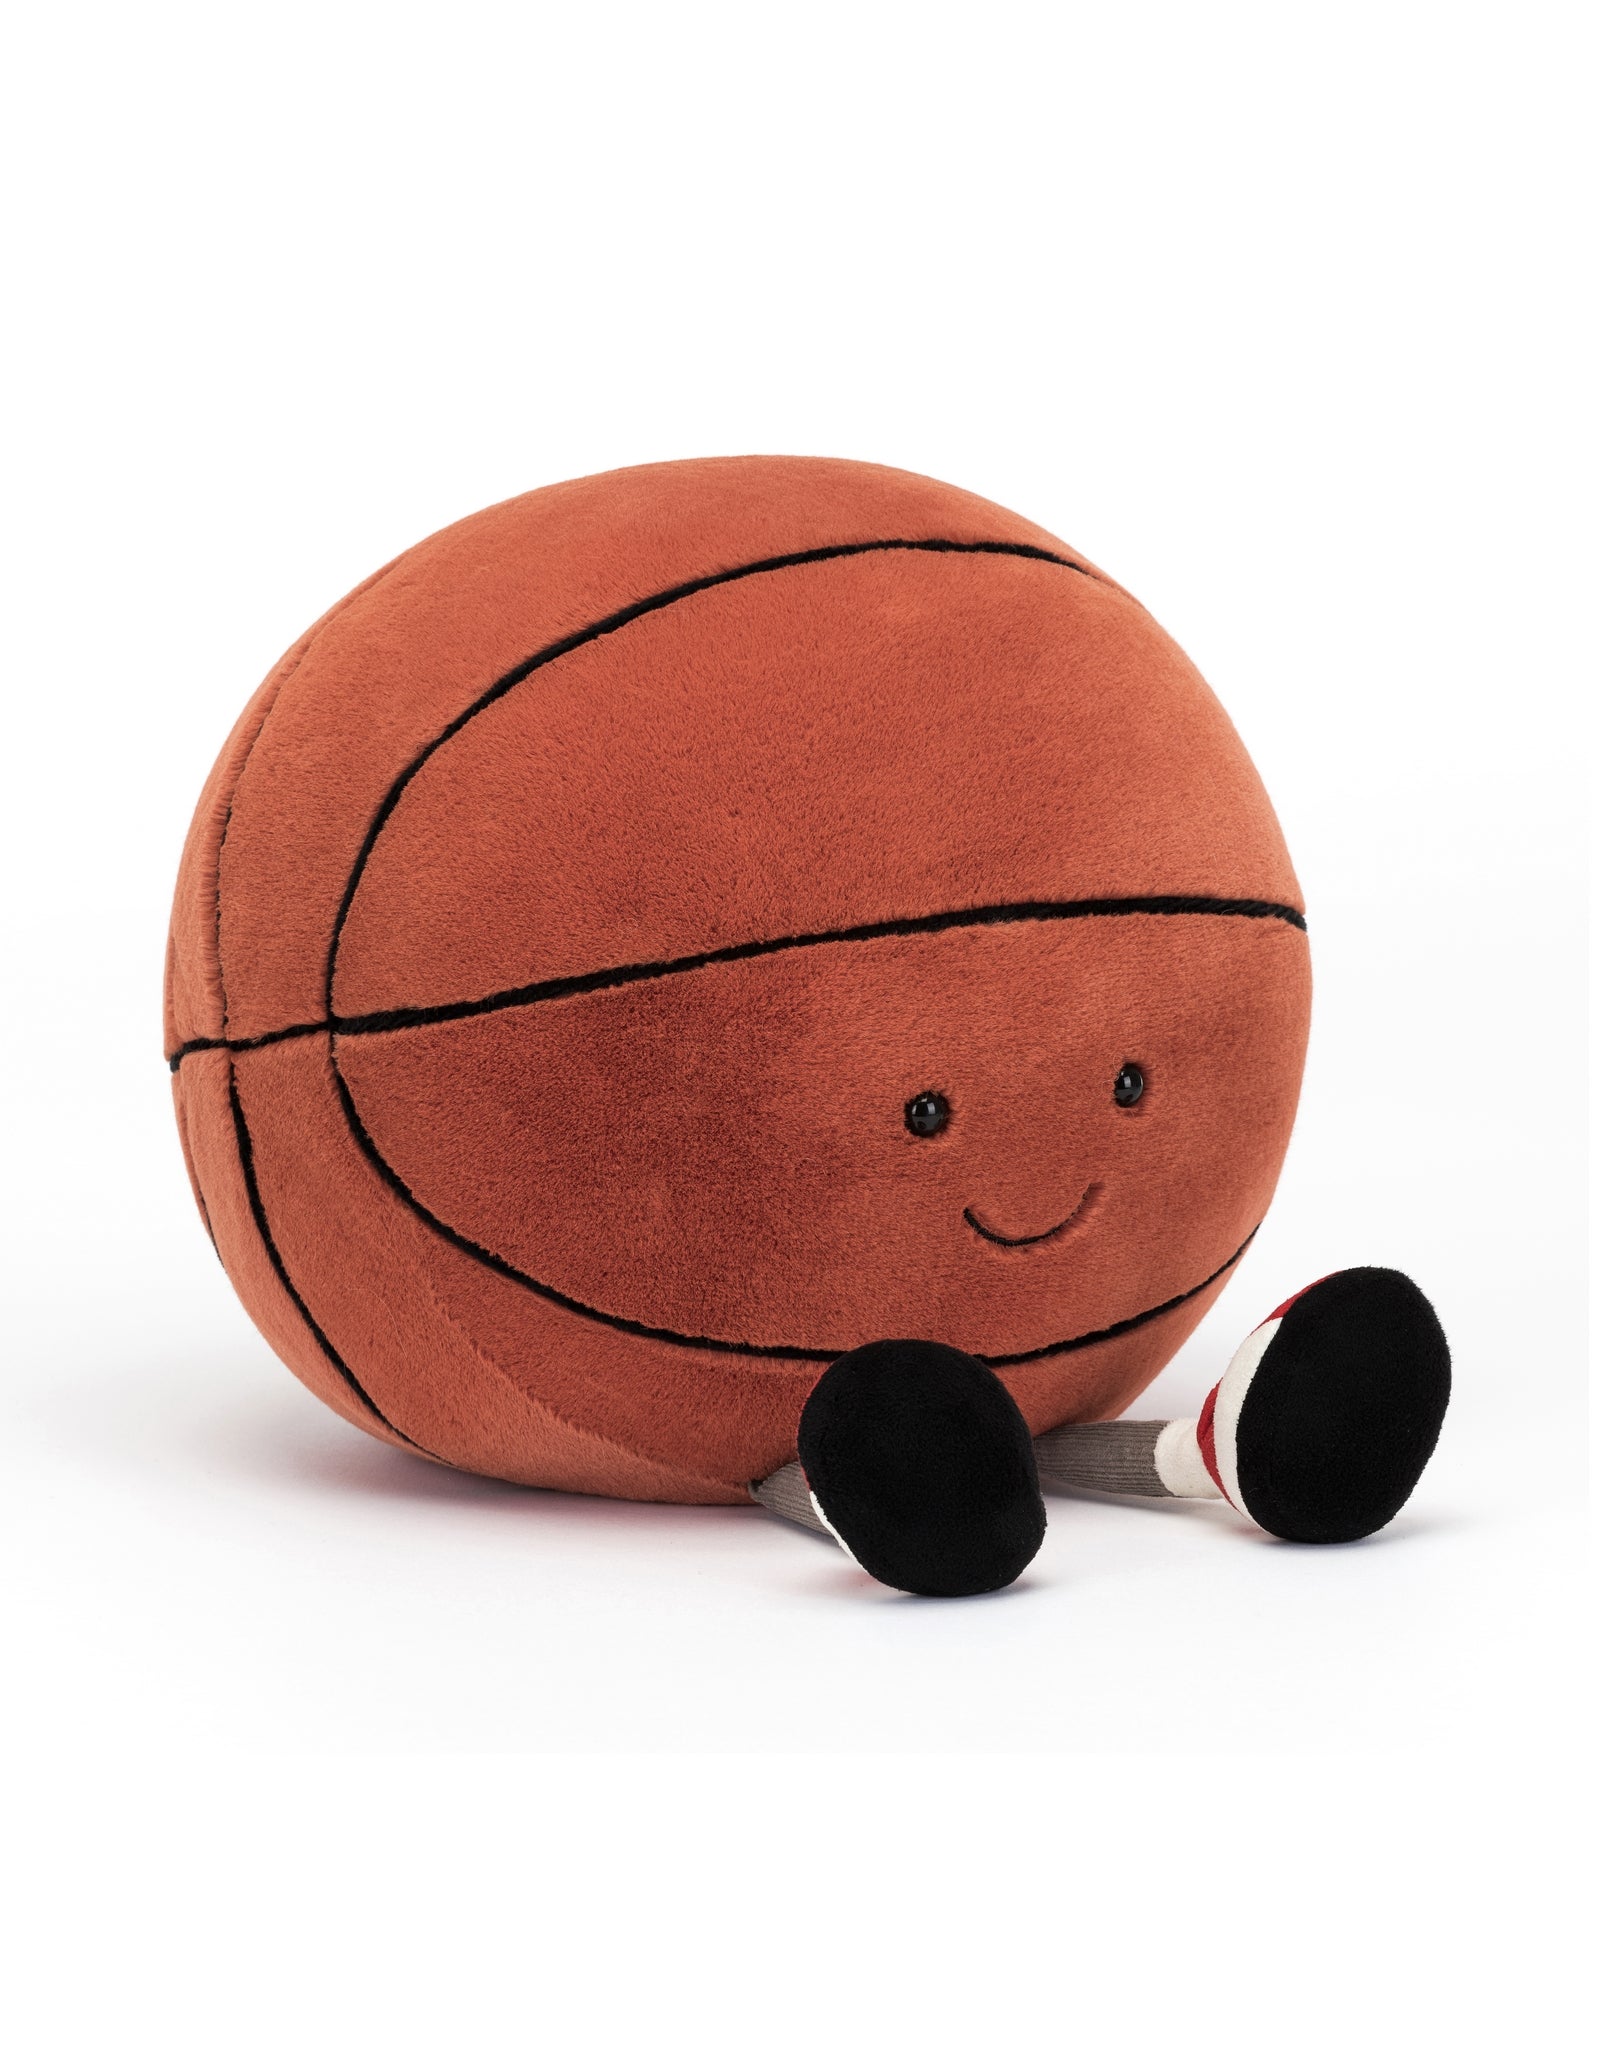 Ballon de basket, Basketball